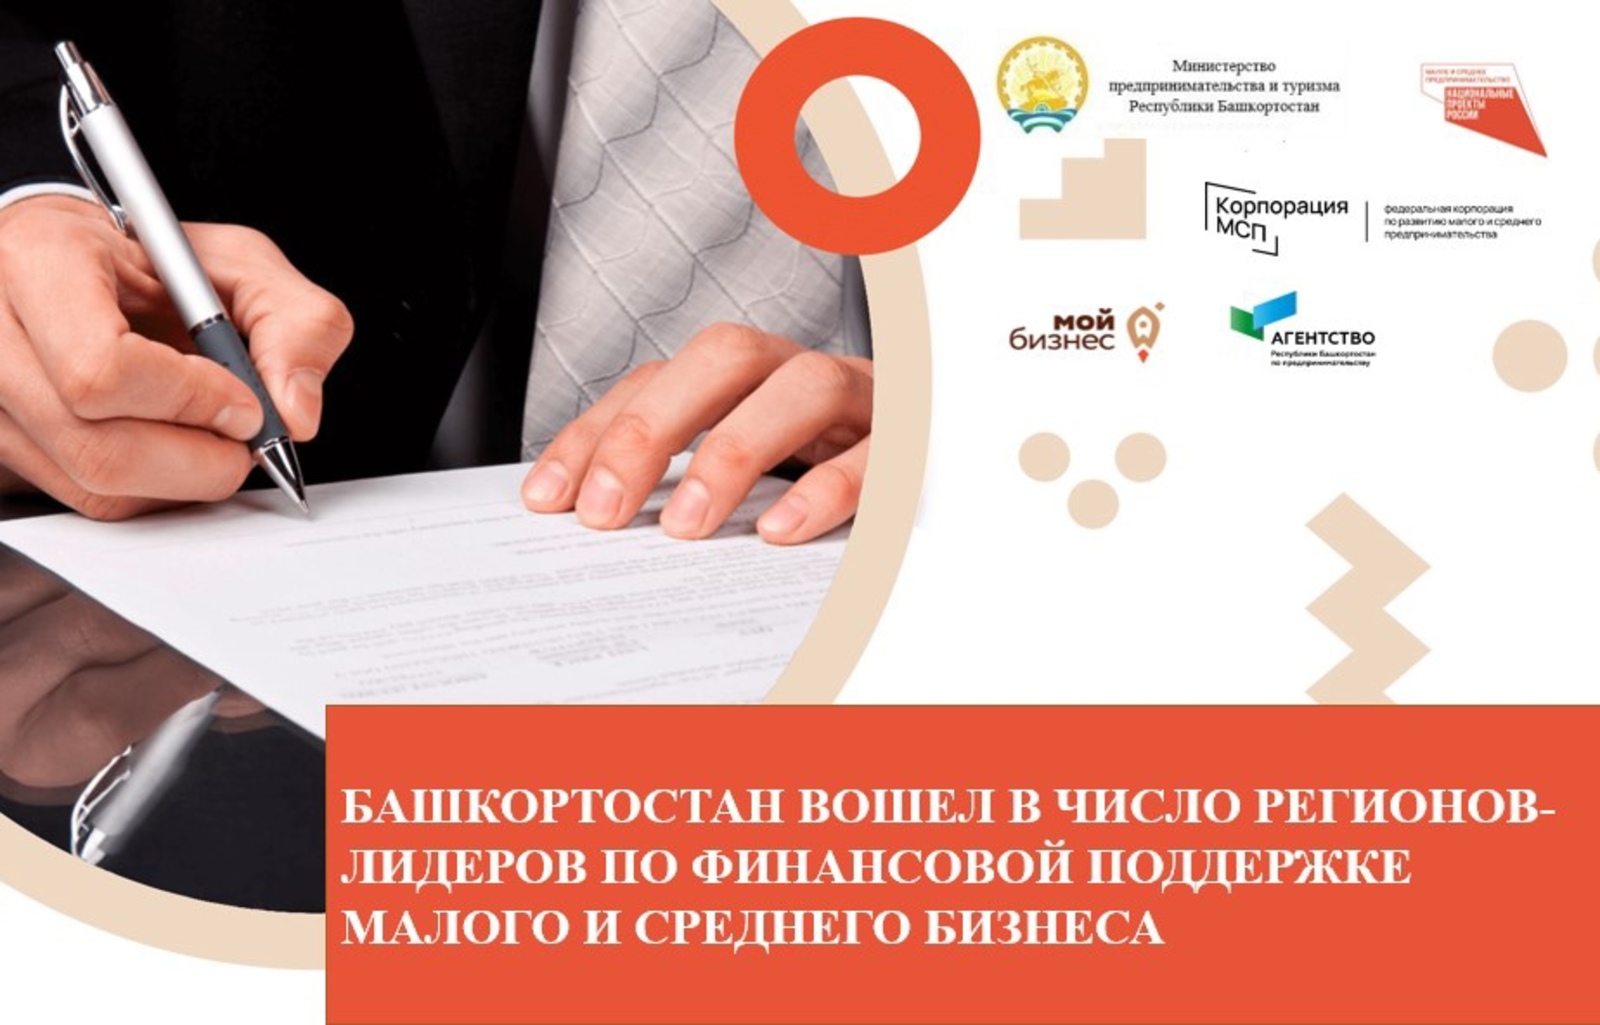 Башкортостан в числе регионов-лидеров по финансовой поддержке малого и среднего бизнеса